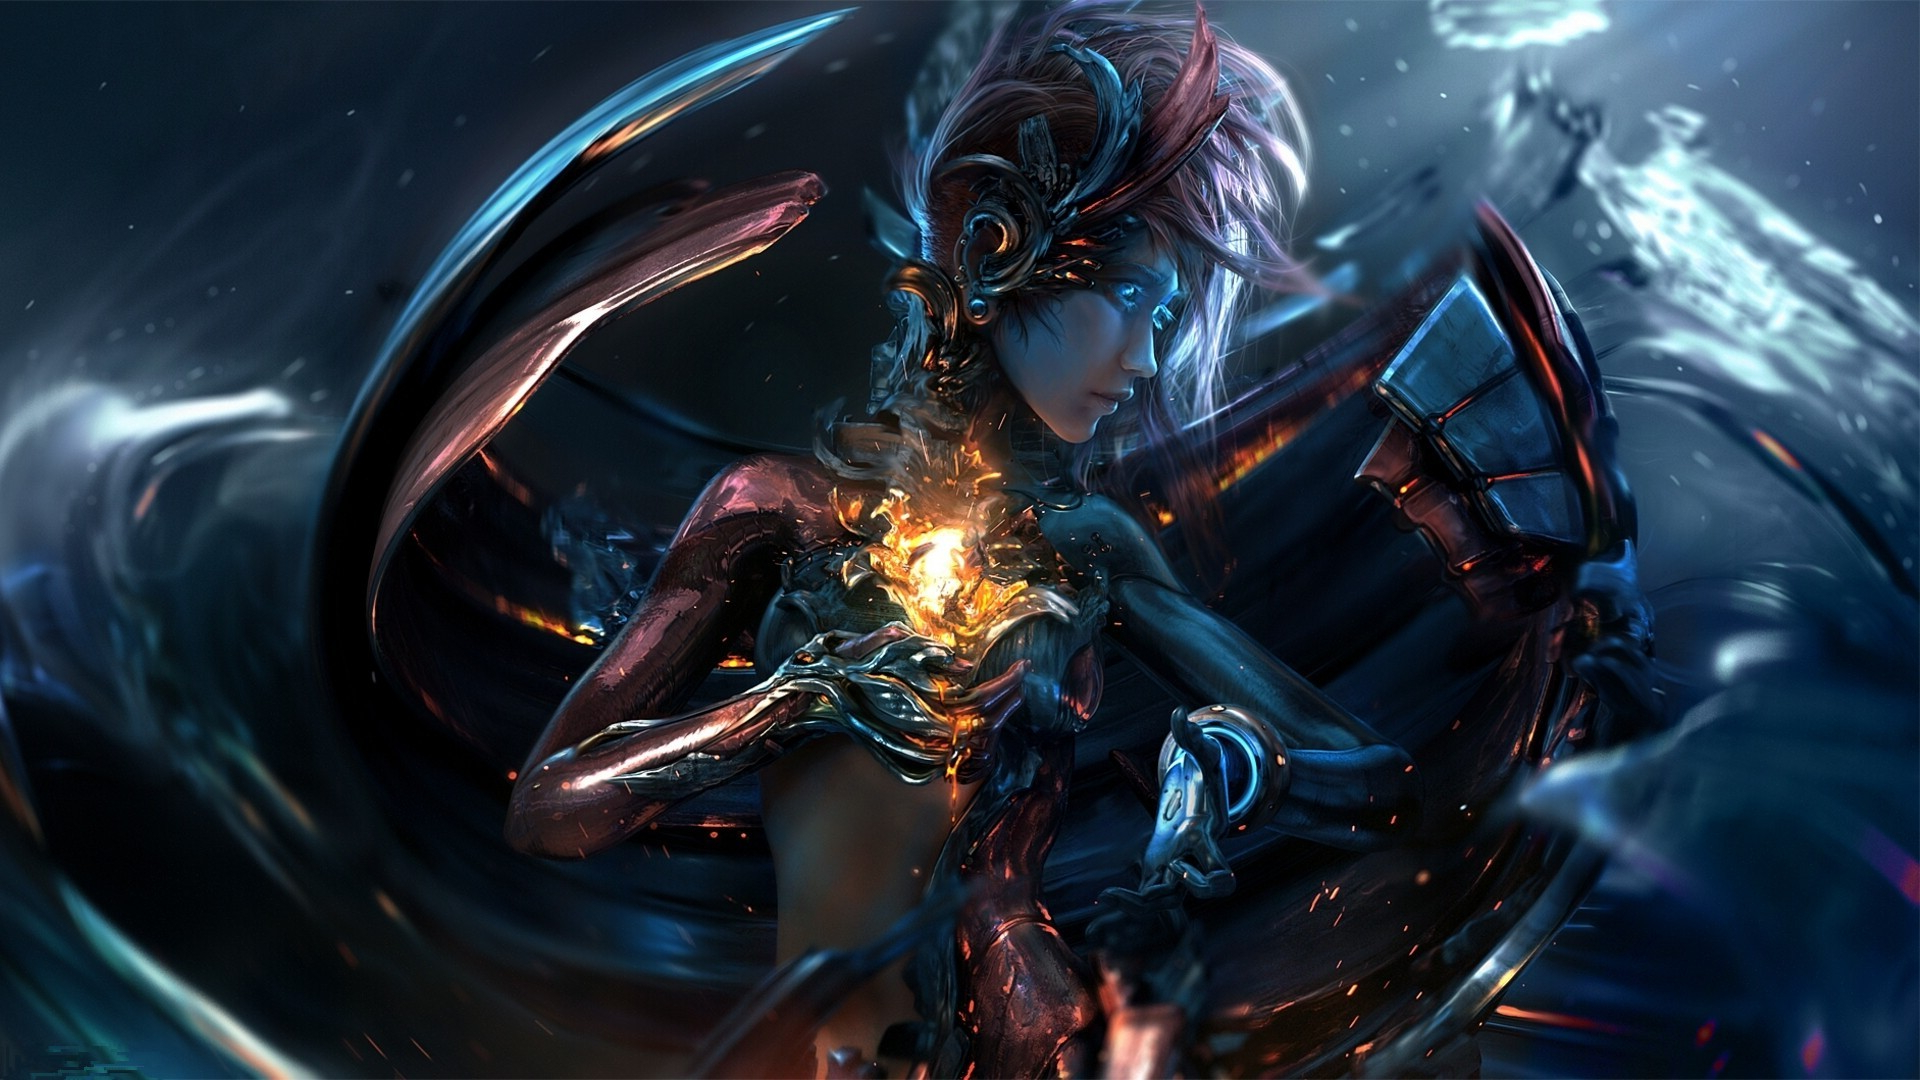 8196-artwork-digital_art-women-technology-cyborg-cyberpunk-angel-demon-fantasy_art-robot.jpg